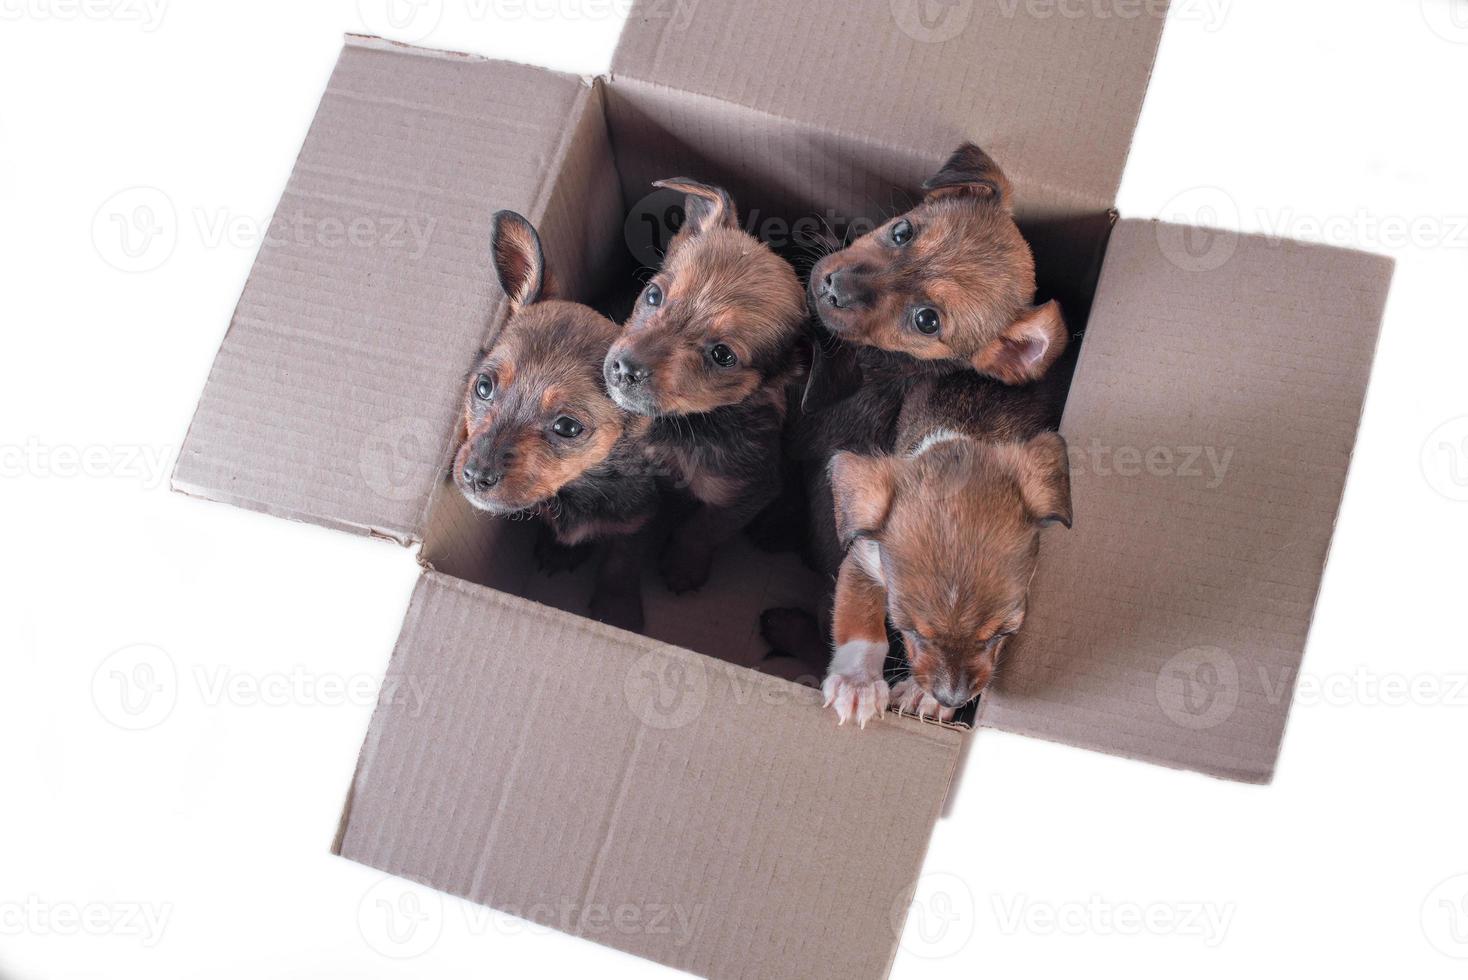 quatro filhotes exangues em uma caixa de papelão em um fundo branco foto